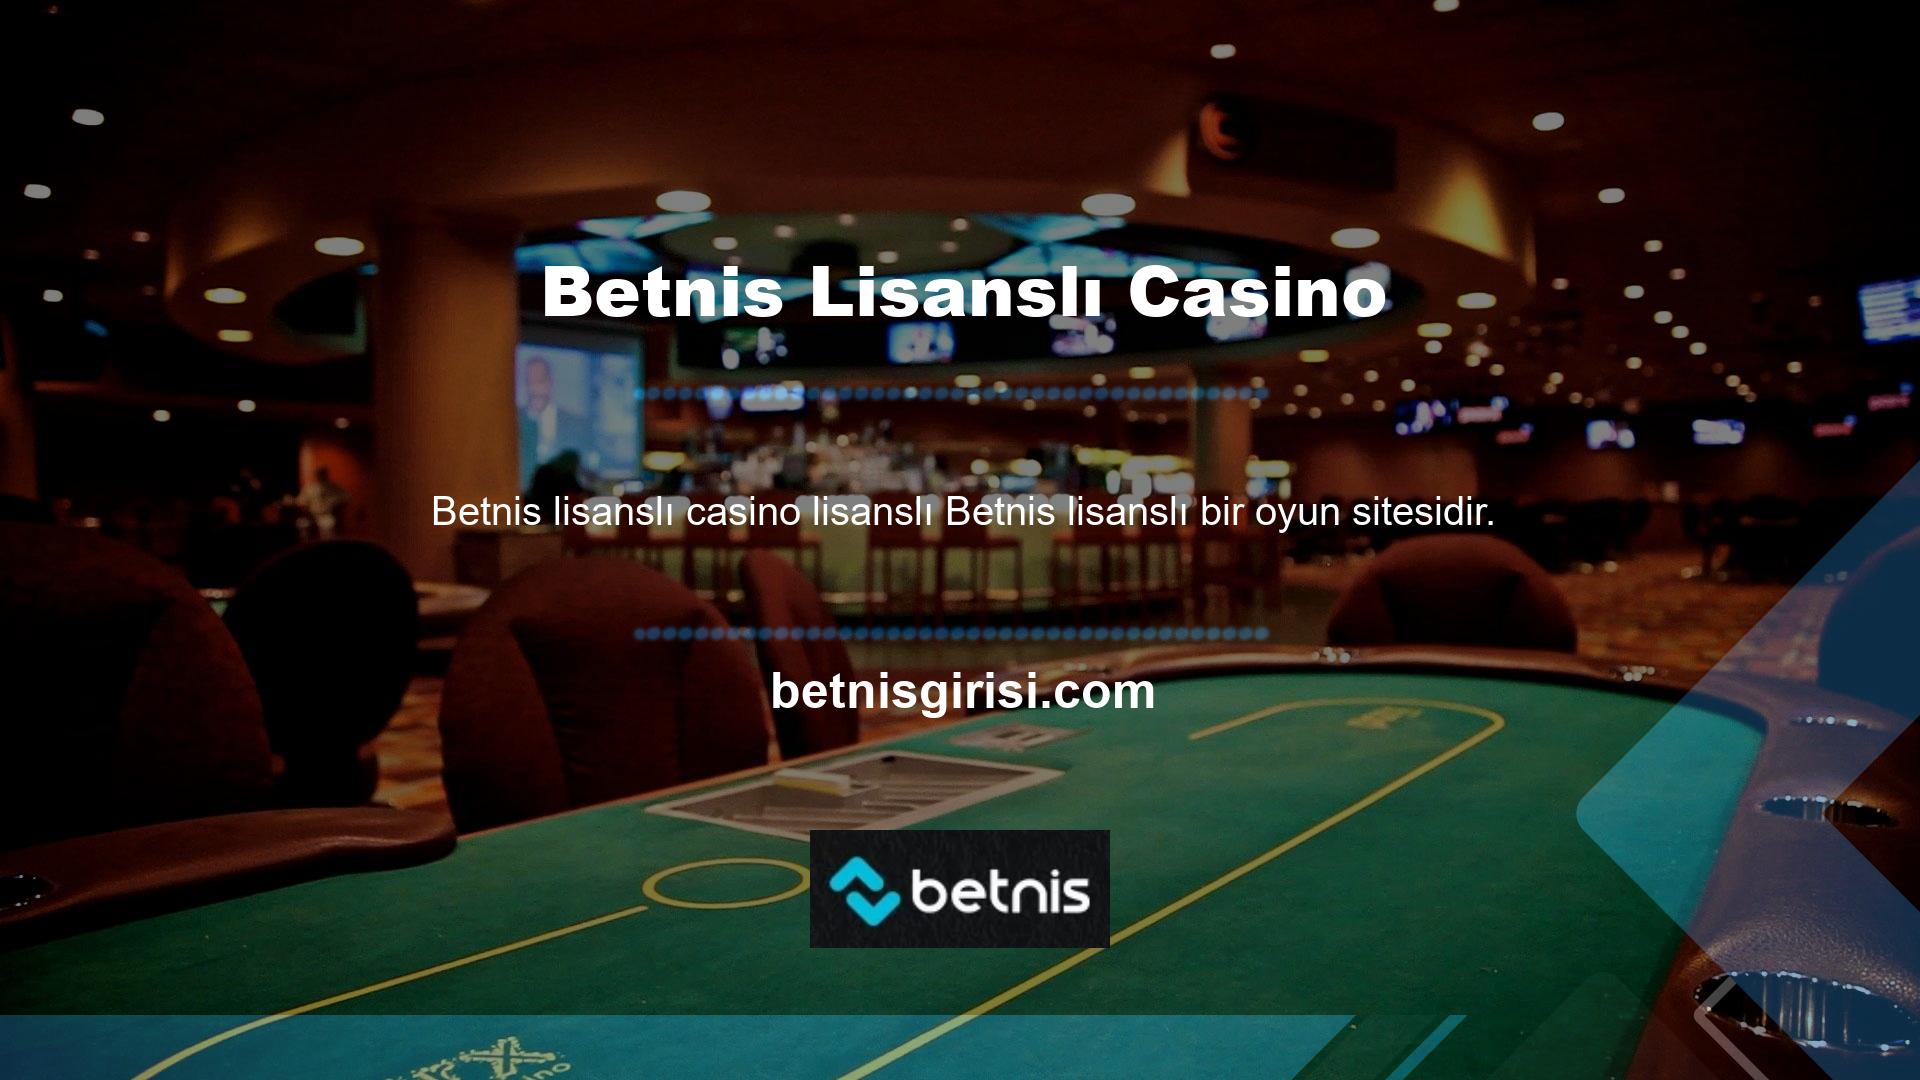 Betnis Lisanslı Casino Ülkemizde casino sitelerinin yasa dışı olduğunu söyleyebiliriz